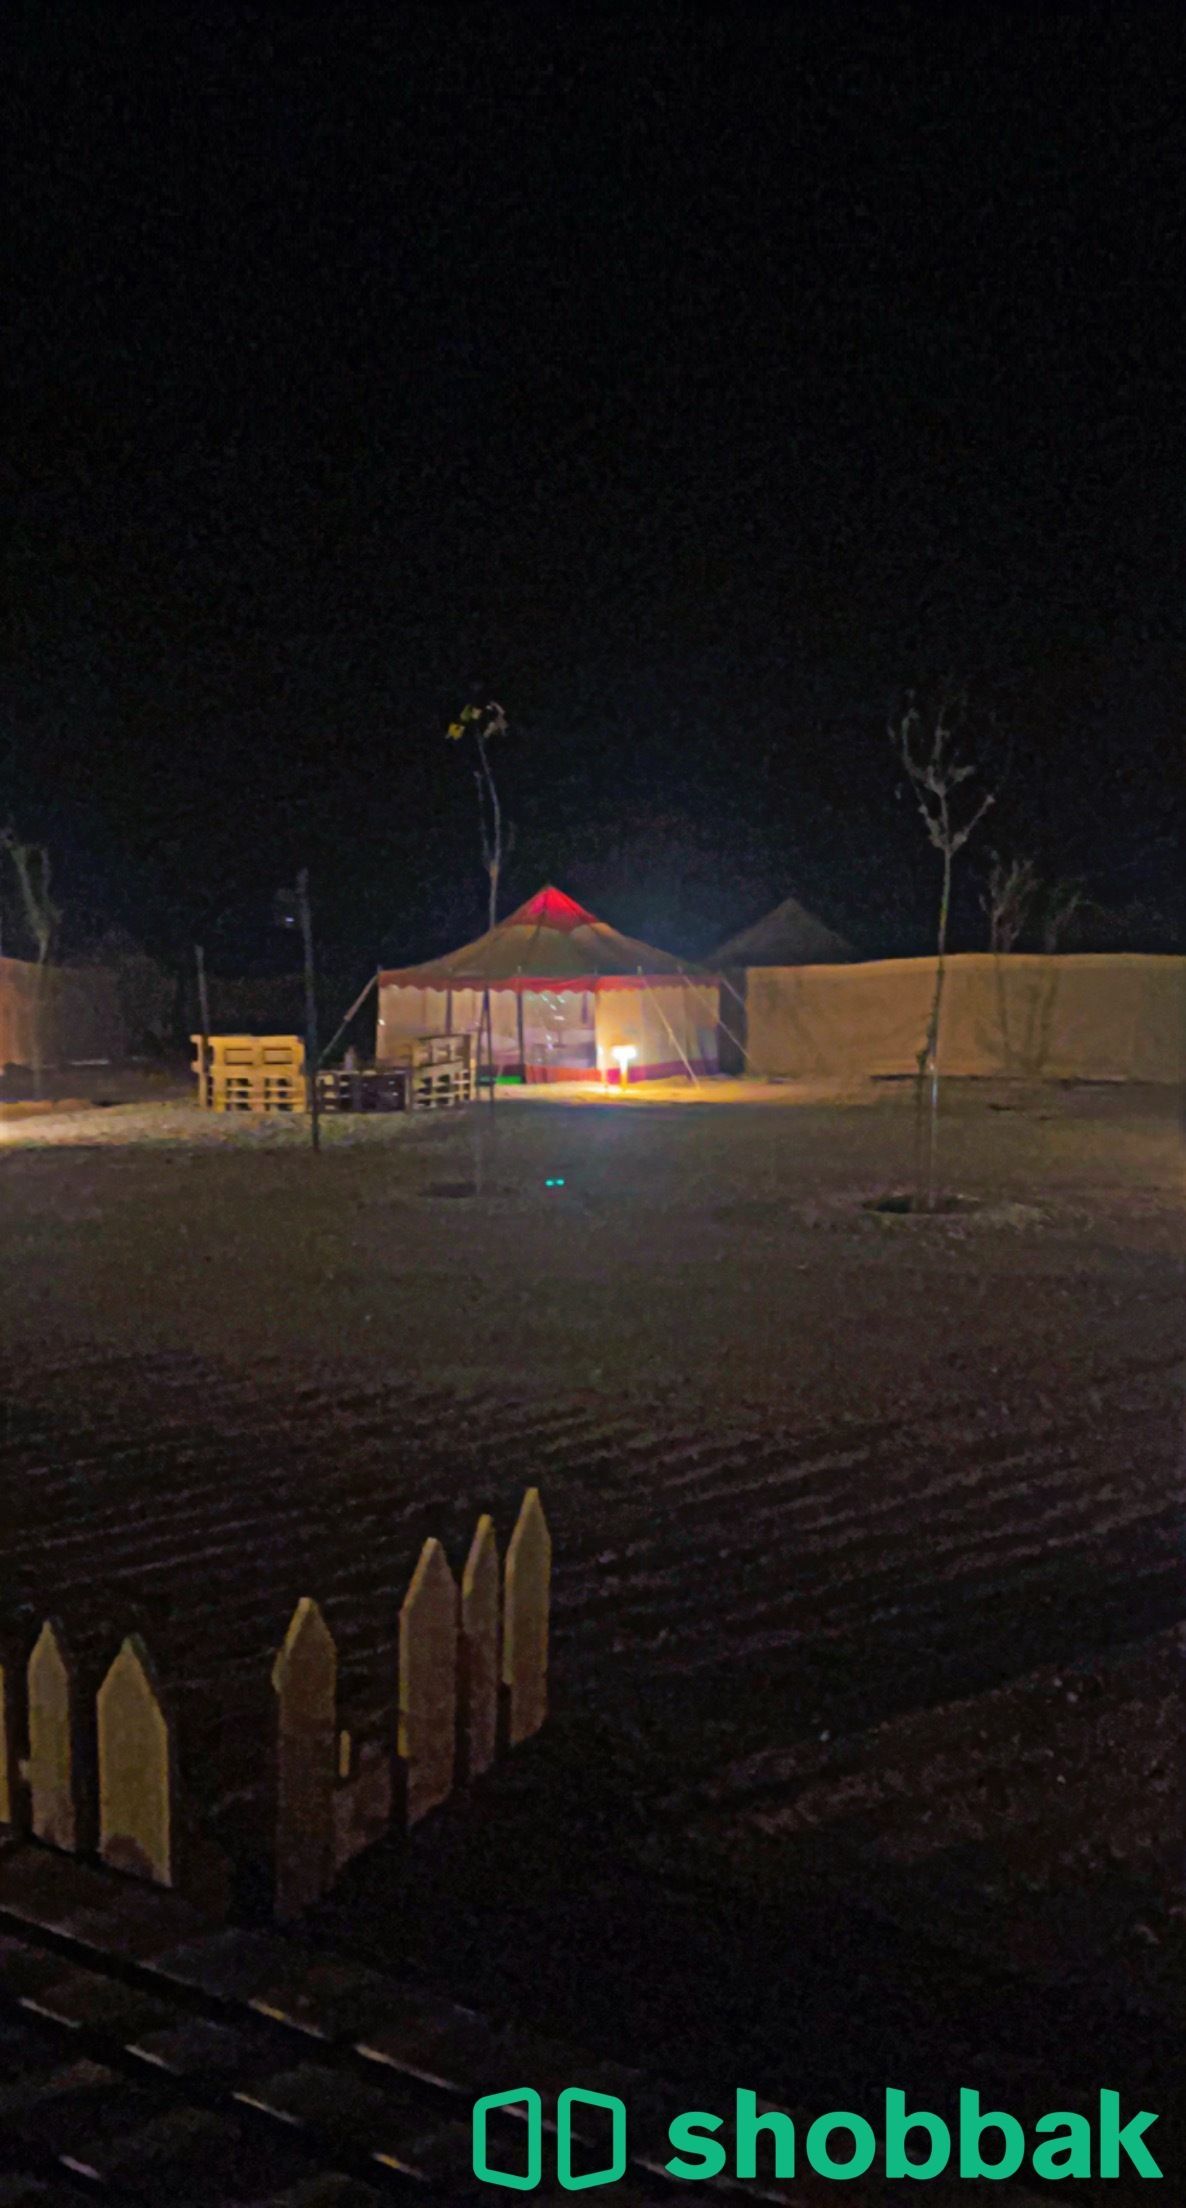 مخيم ومنتزه GAPY Shobbak Saudi Arabia